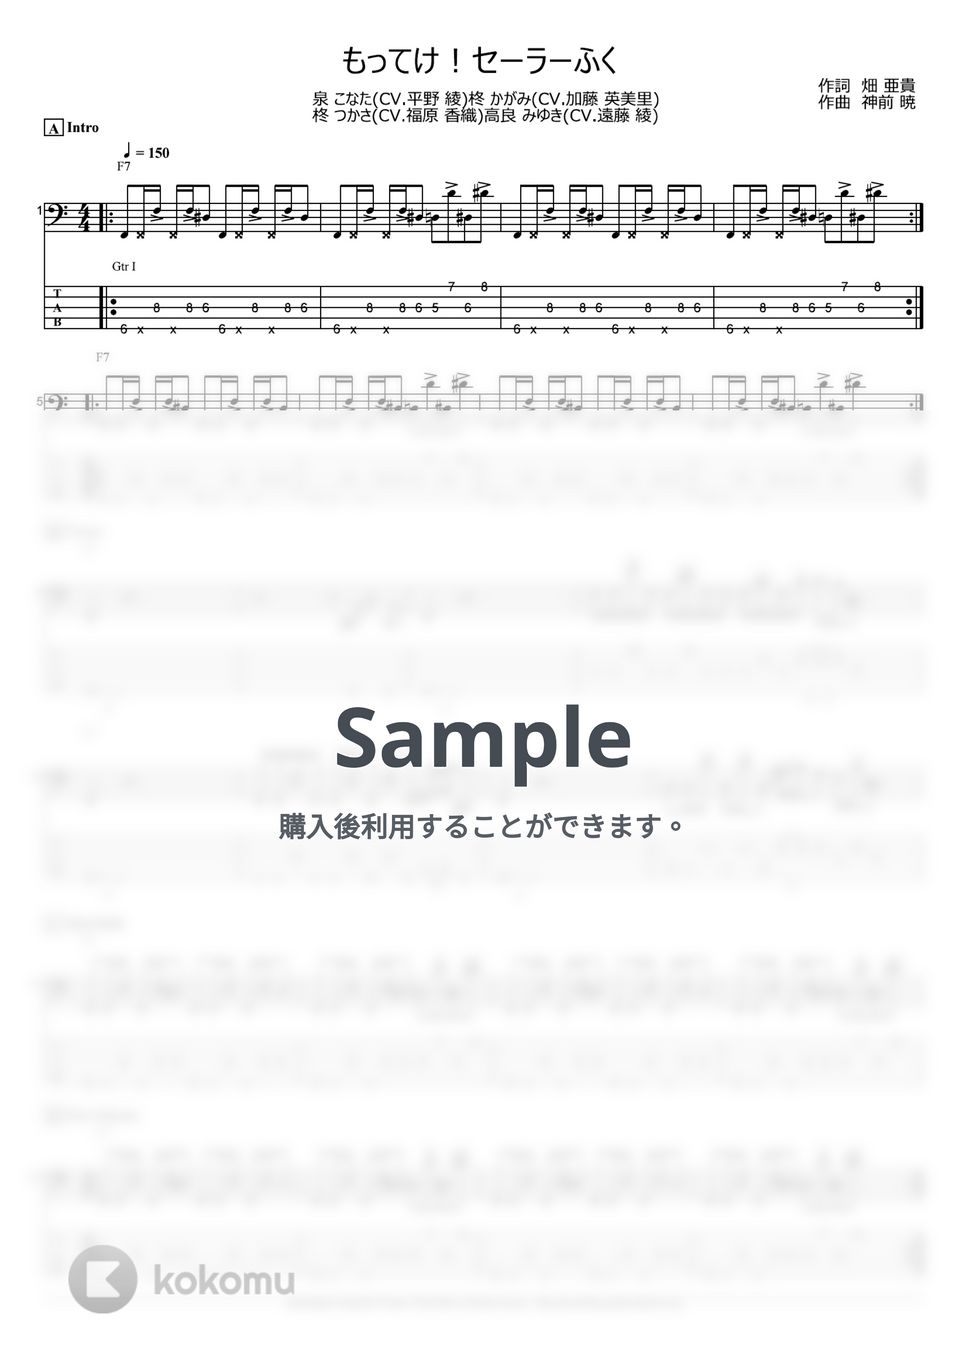 らき☆すた - もってけ!セーラーふく (ベース Tab譜 5弦) by T's bass score